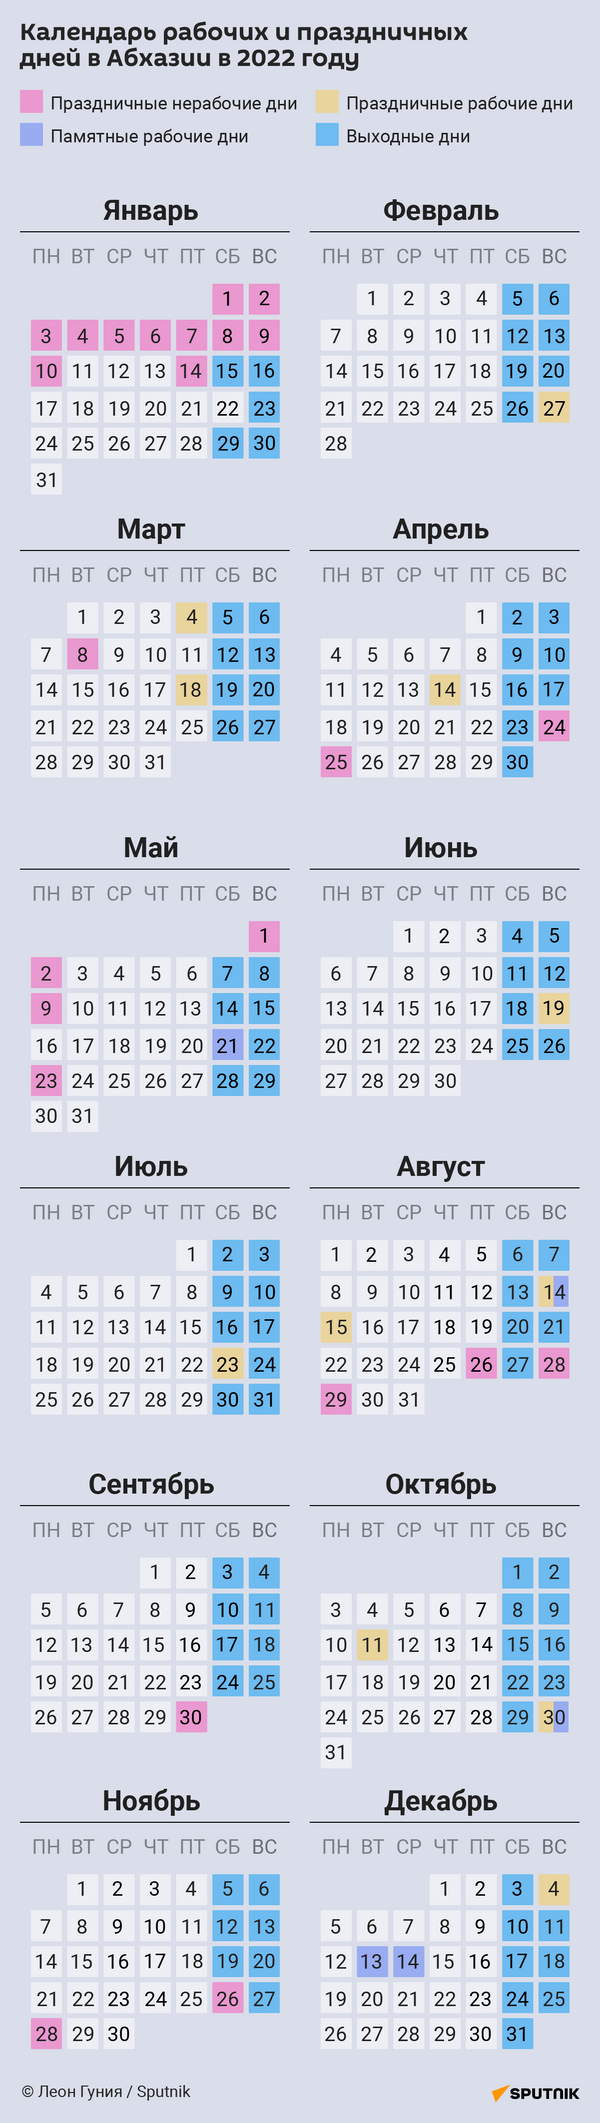 Производственный календарь 2022 (для ИГ) - Sputnik Абхазия